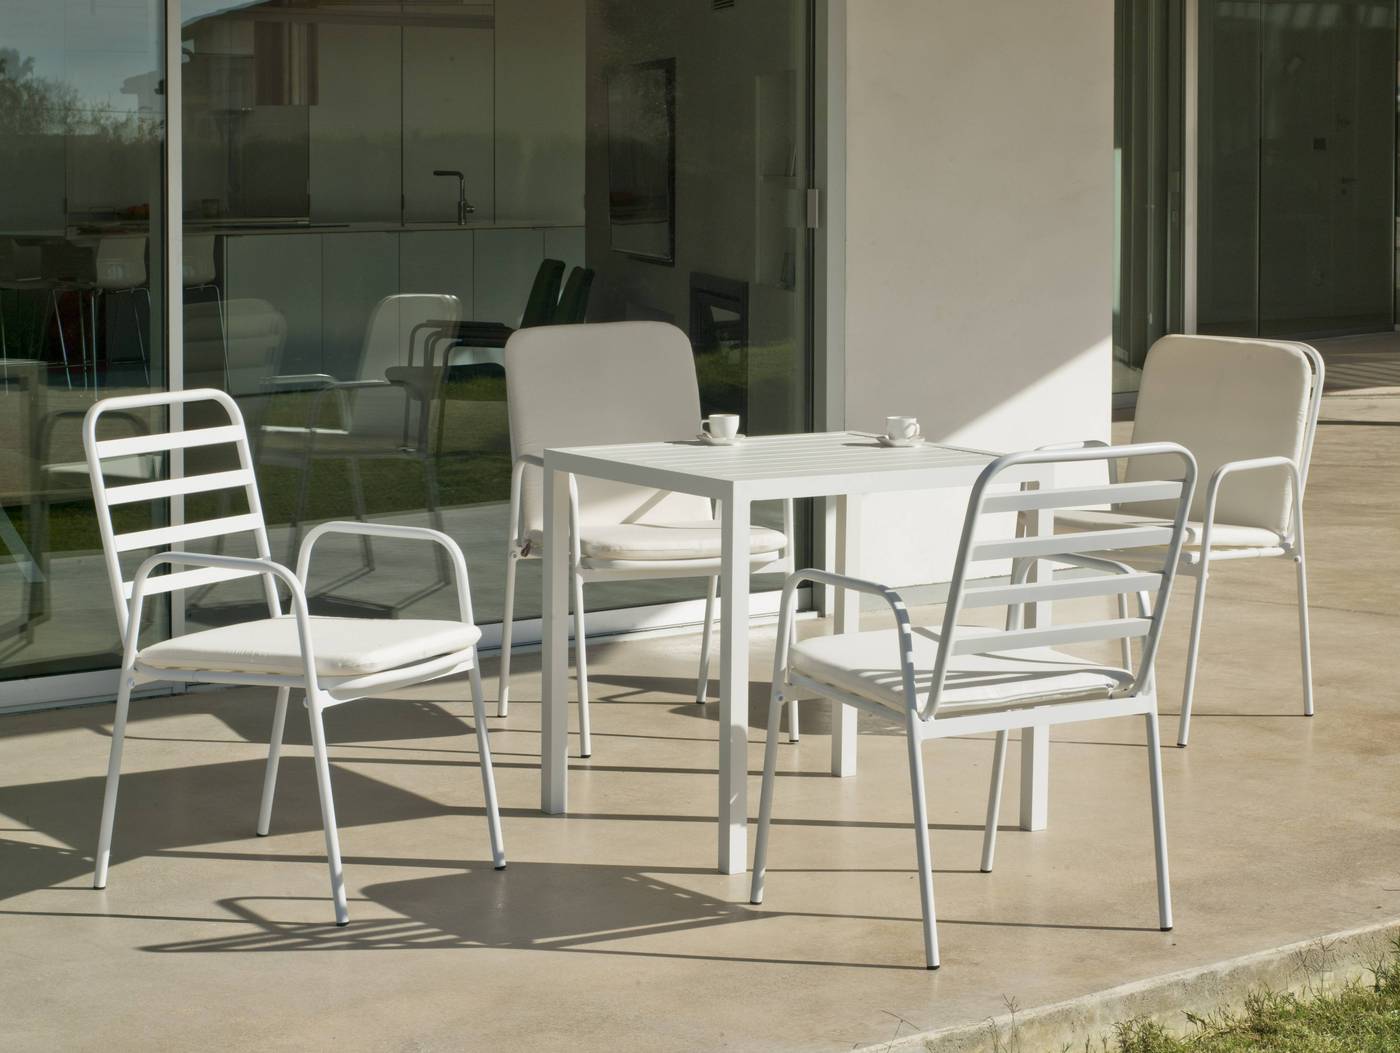 Conjunto apilable de aluminio luxe: mesa cuadrada de 80 cm. + 4 sillones. Disponible en color blanco y color antracita.